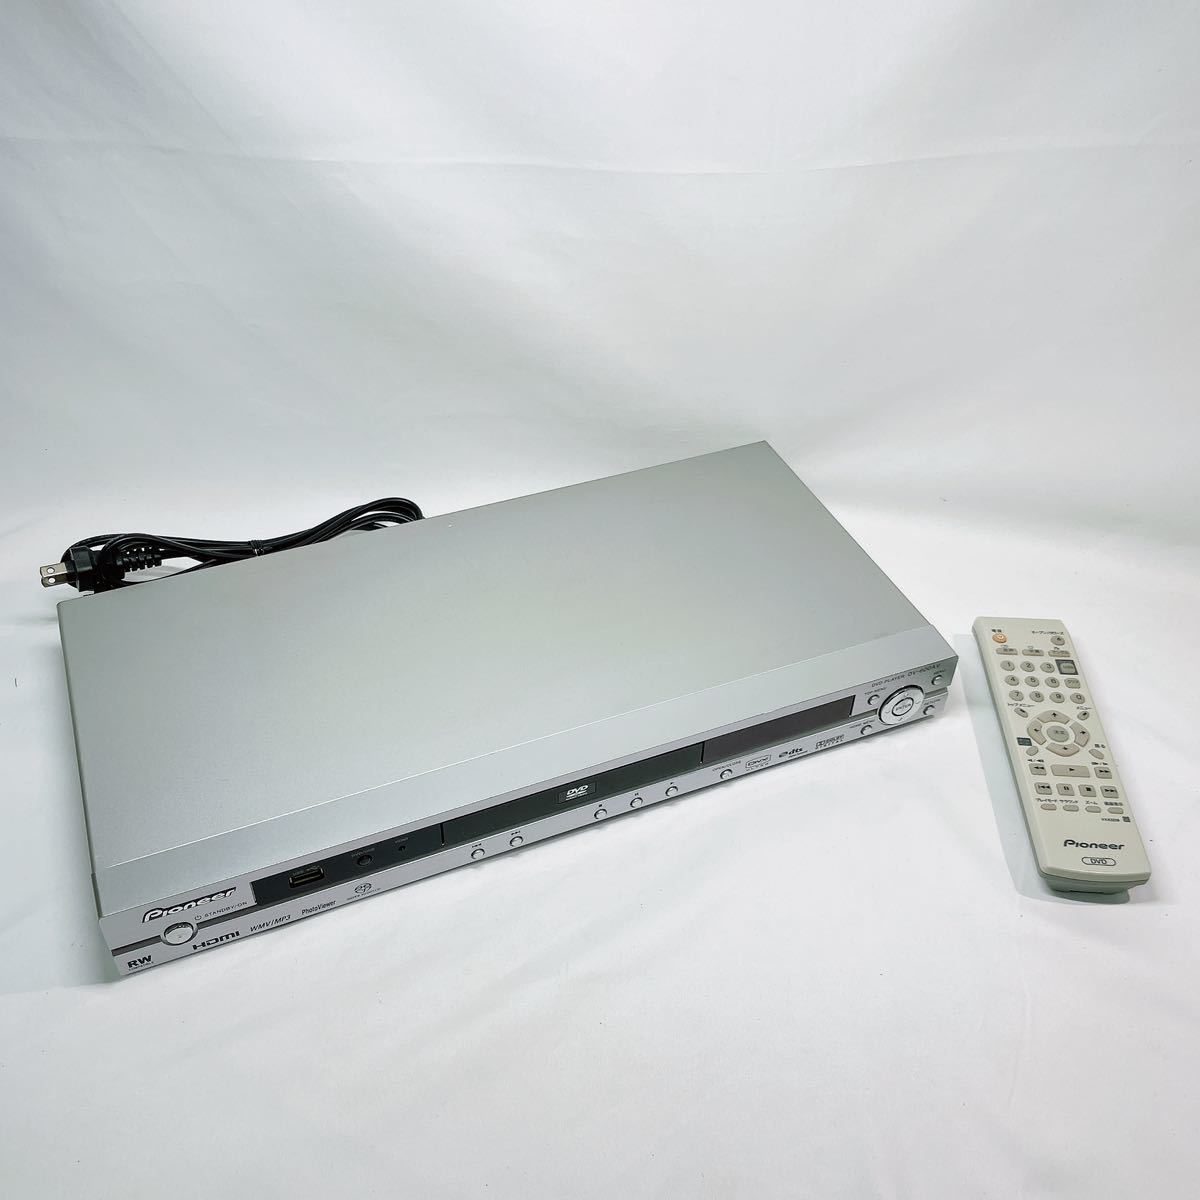 【 動作品 】Pioneer DVD PLAYER DV-600AV 2007年製 パイオニア DVDプレイヤー プレイヤー リモコン ブランド 廃盤 希少